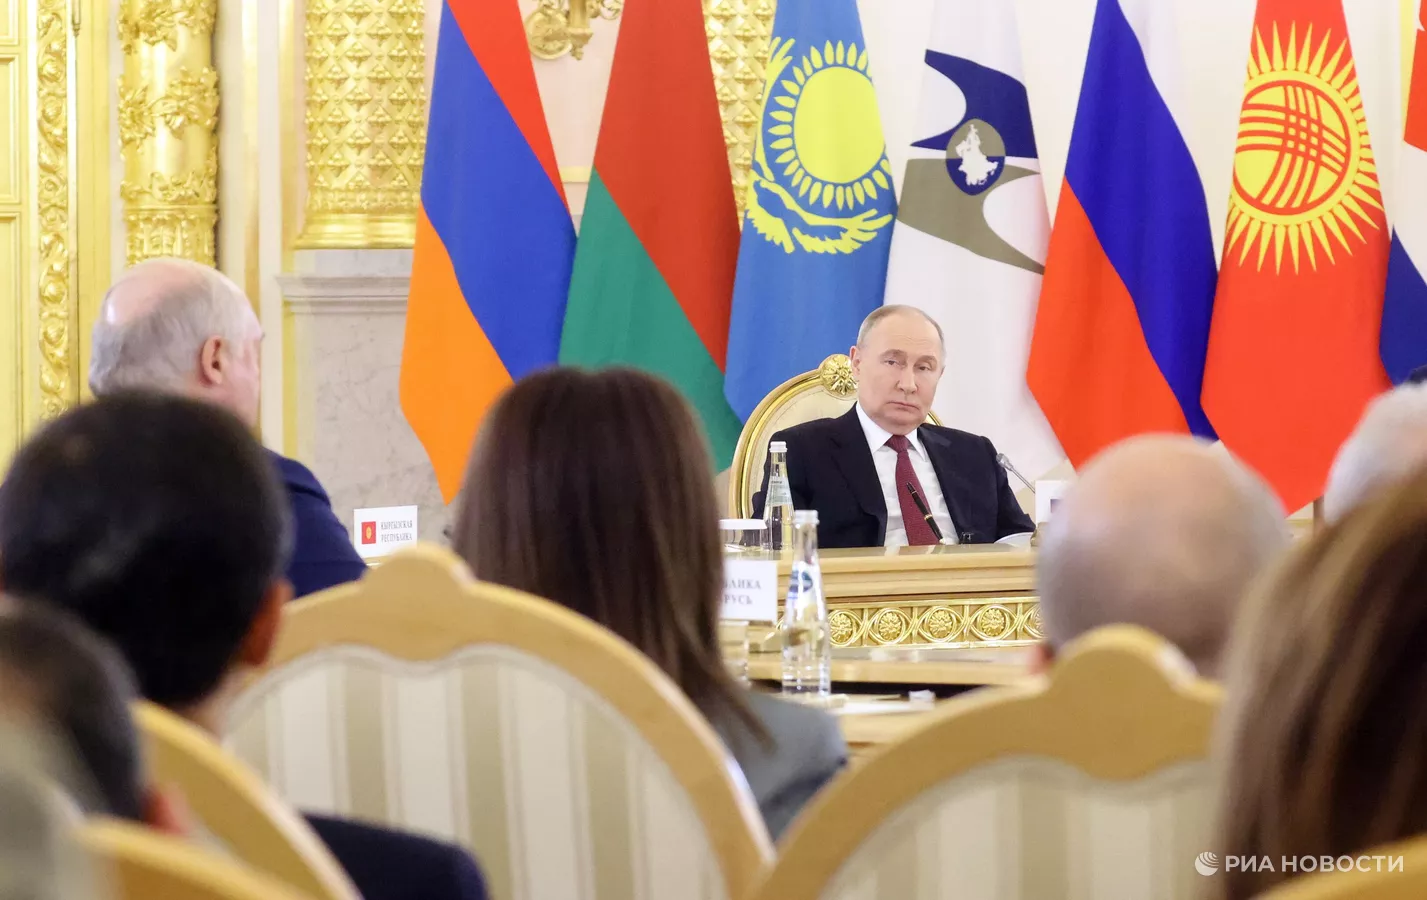  Պուտինը բարձր է գնահատել Ռուսաստանի և Հայաստանի համագործակցությունը ԵԱՏՄ շրջանակներում